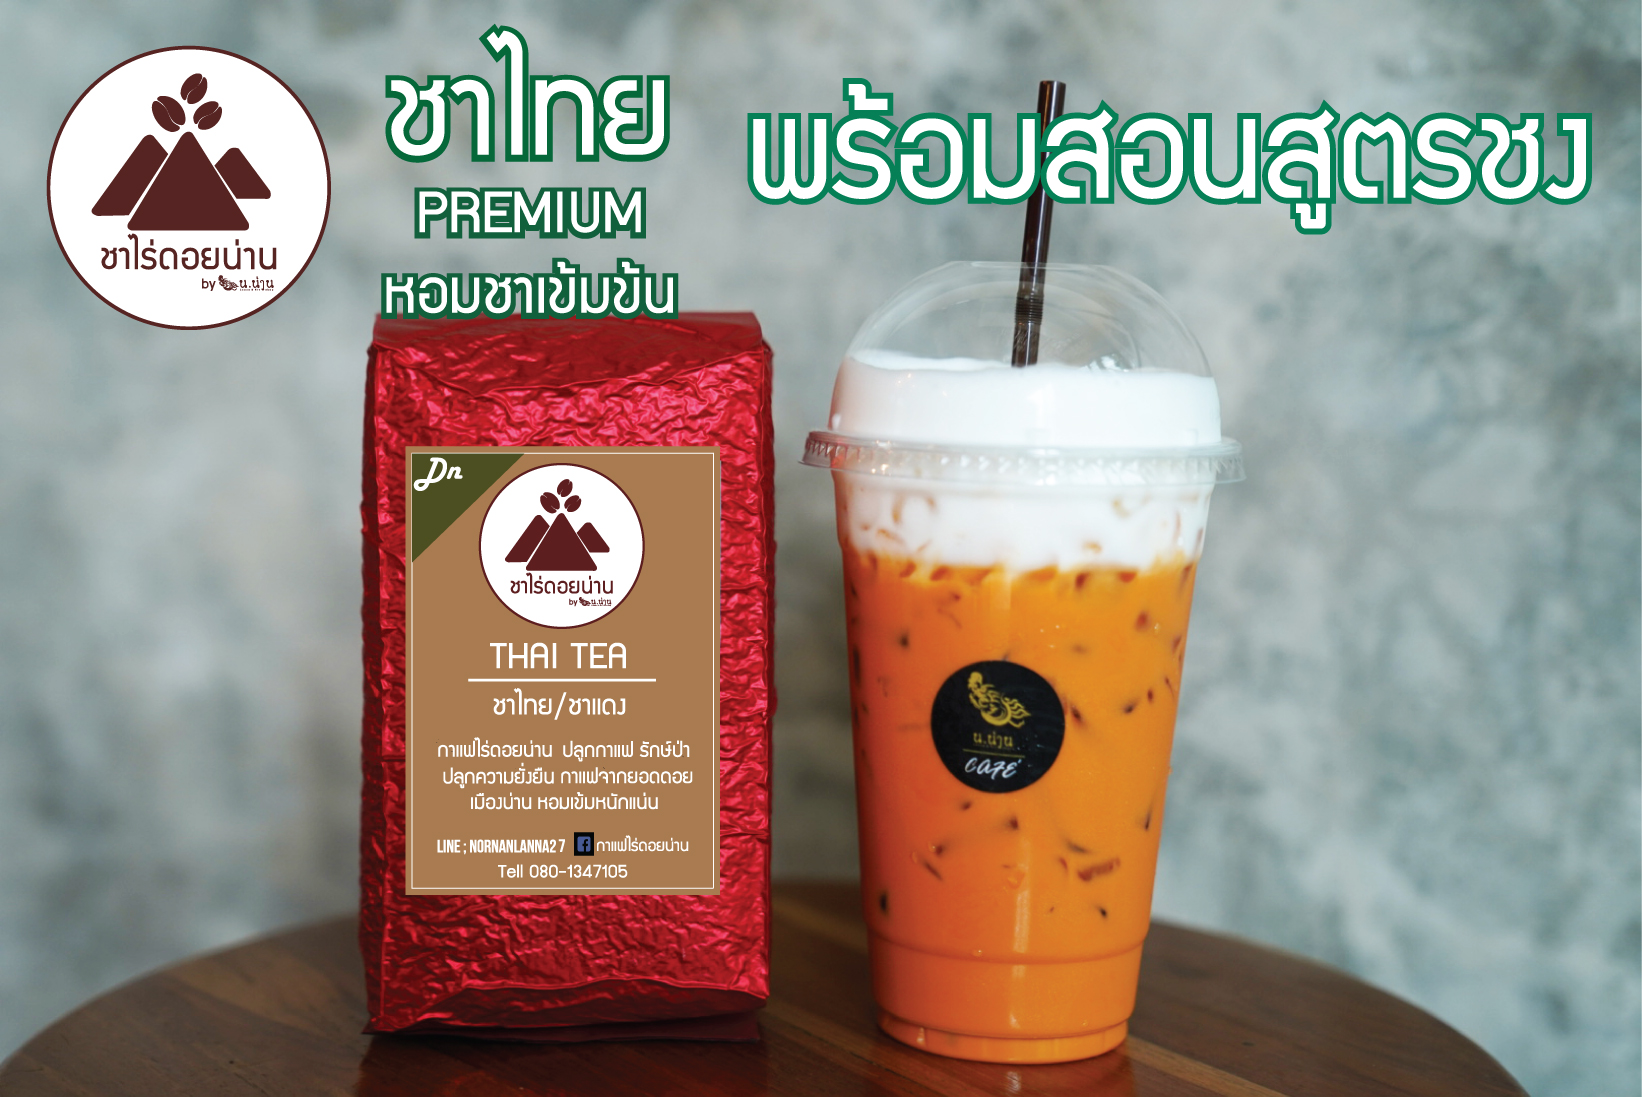 ผงใบชาไทย(ชาแดง) Premium สำหรับทำชาไทยชา ชามะนาวน้ำผึ้ง หอมเข้มข้นรสชา ถุง 500 กรัม(สูตรชงอยู่ในรายละเอียดสินค้า) ชาไร่ดอยน่าน